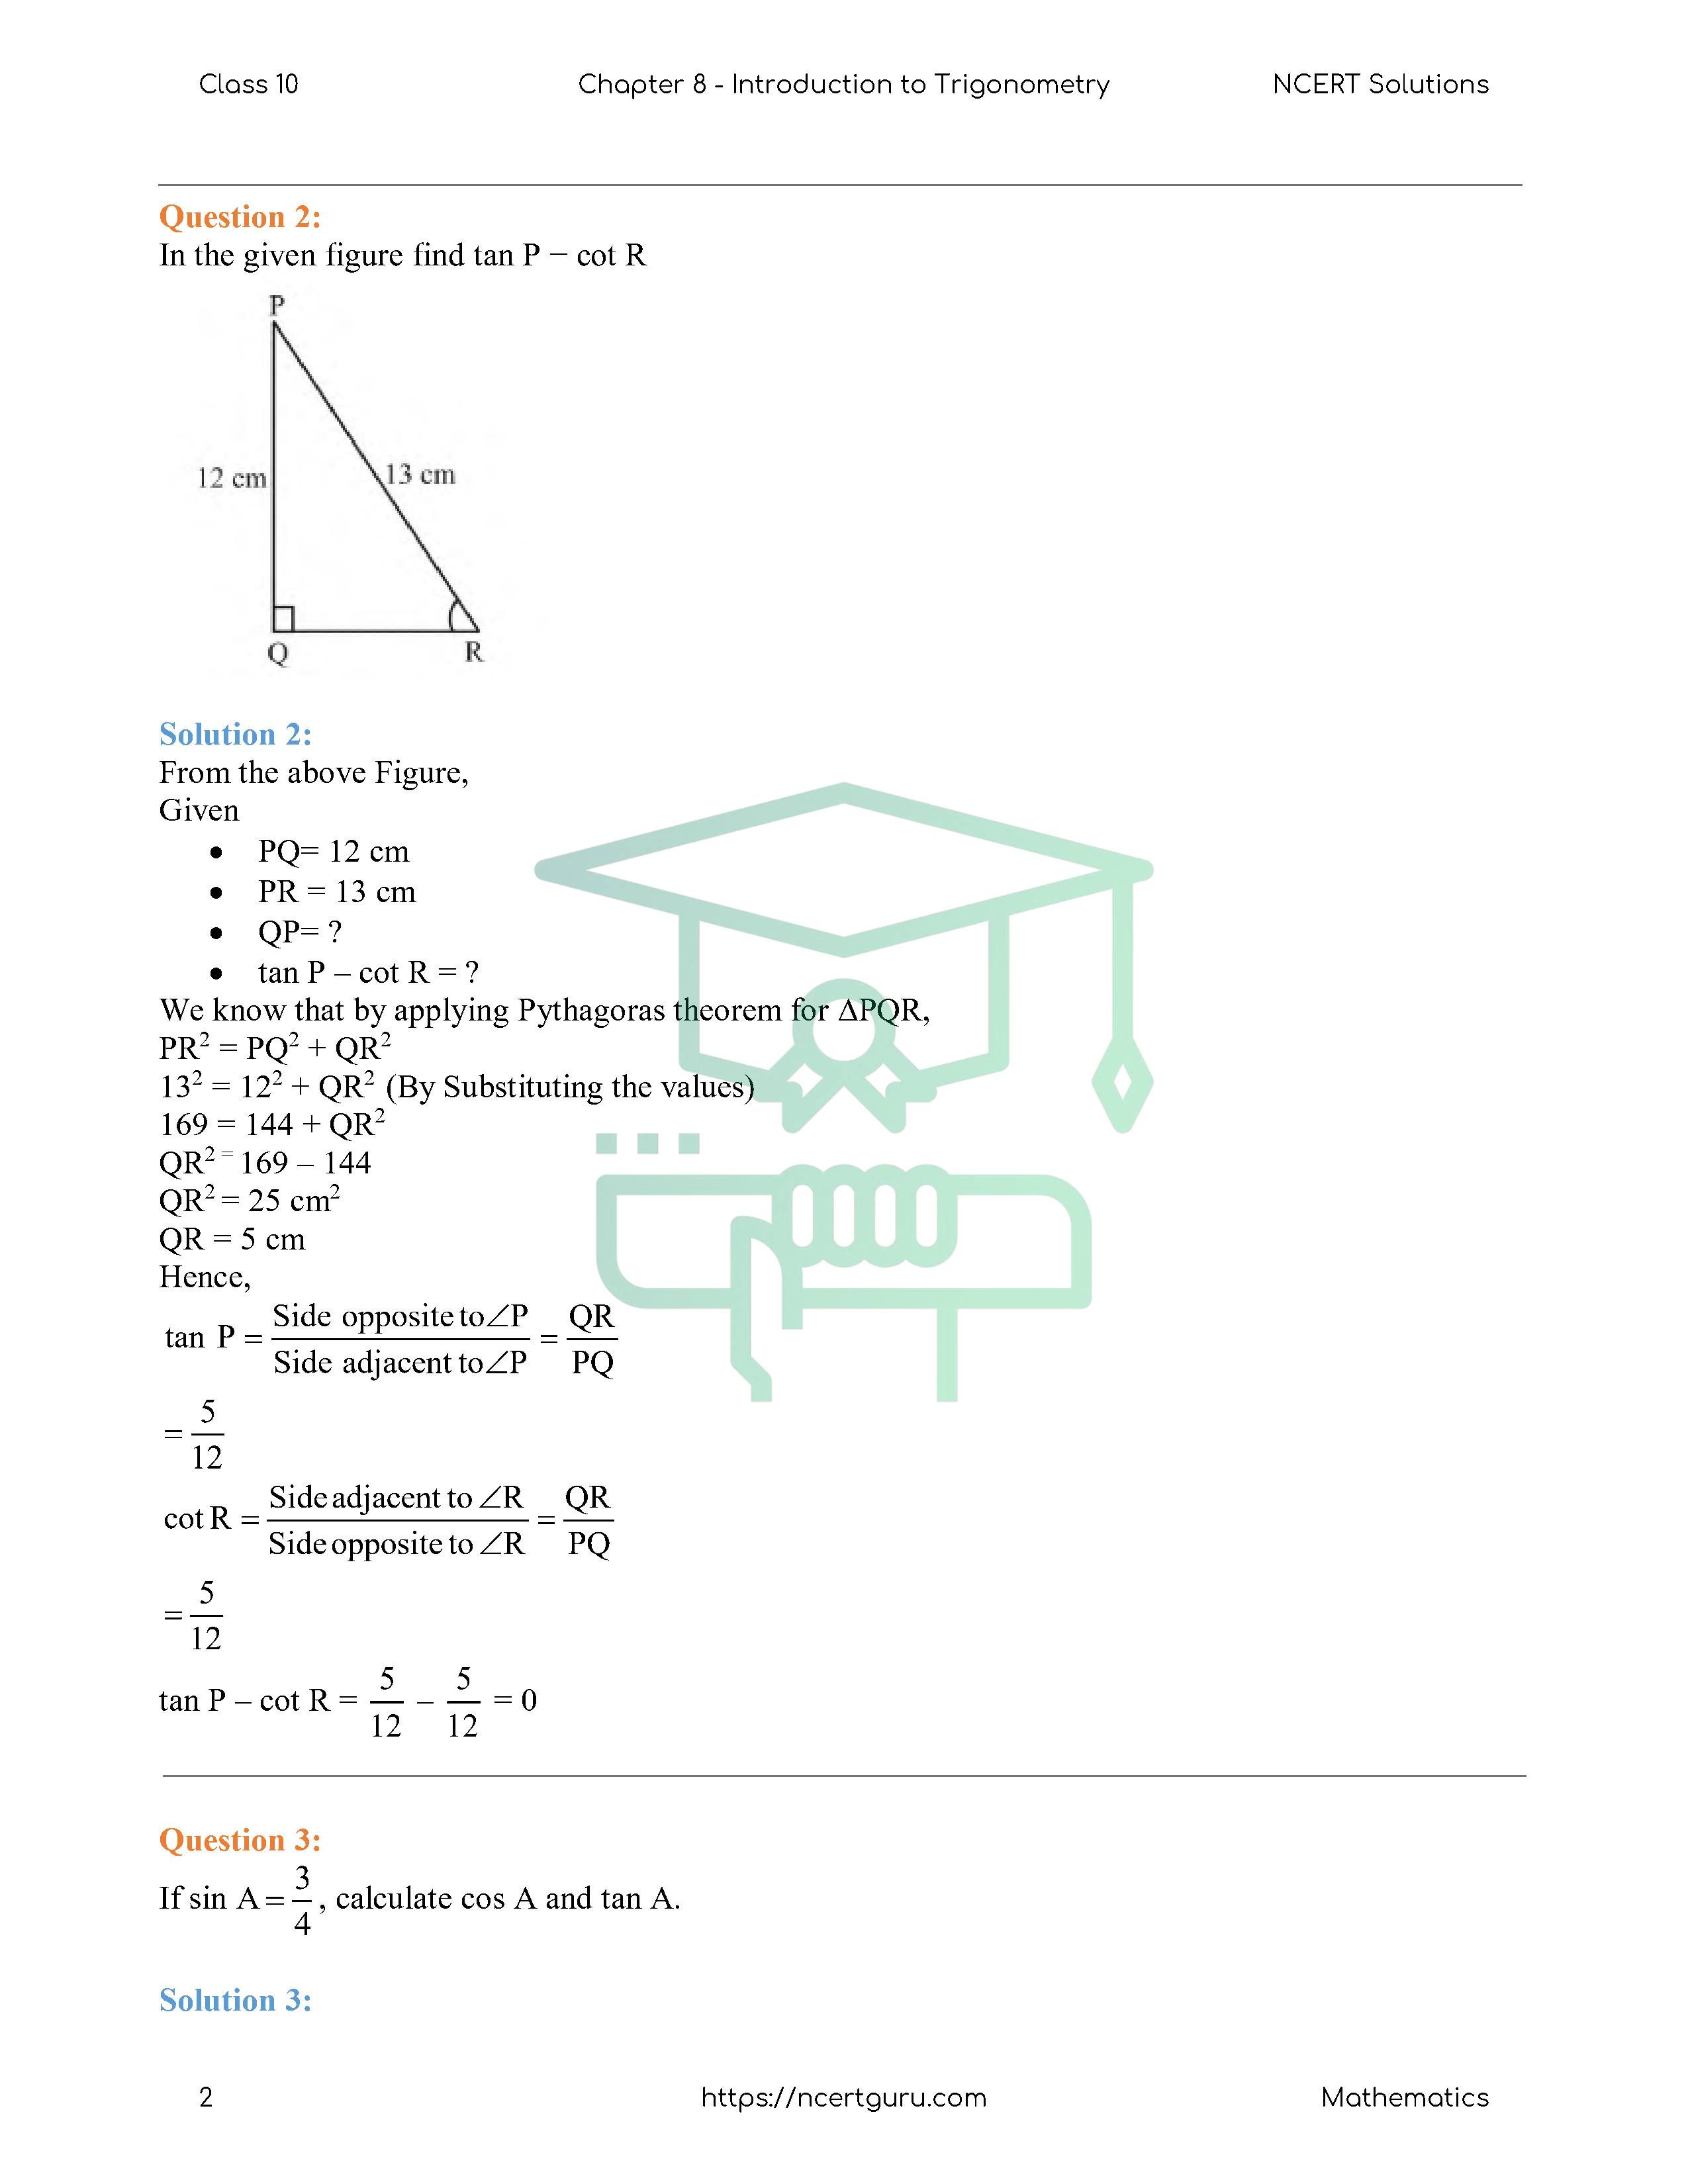 NCERT Solutions for Class 10 Maths Chapter 8